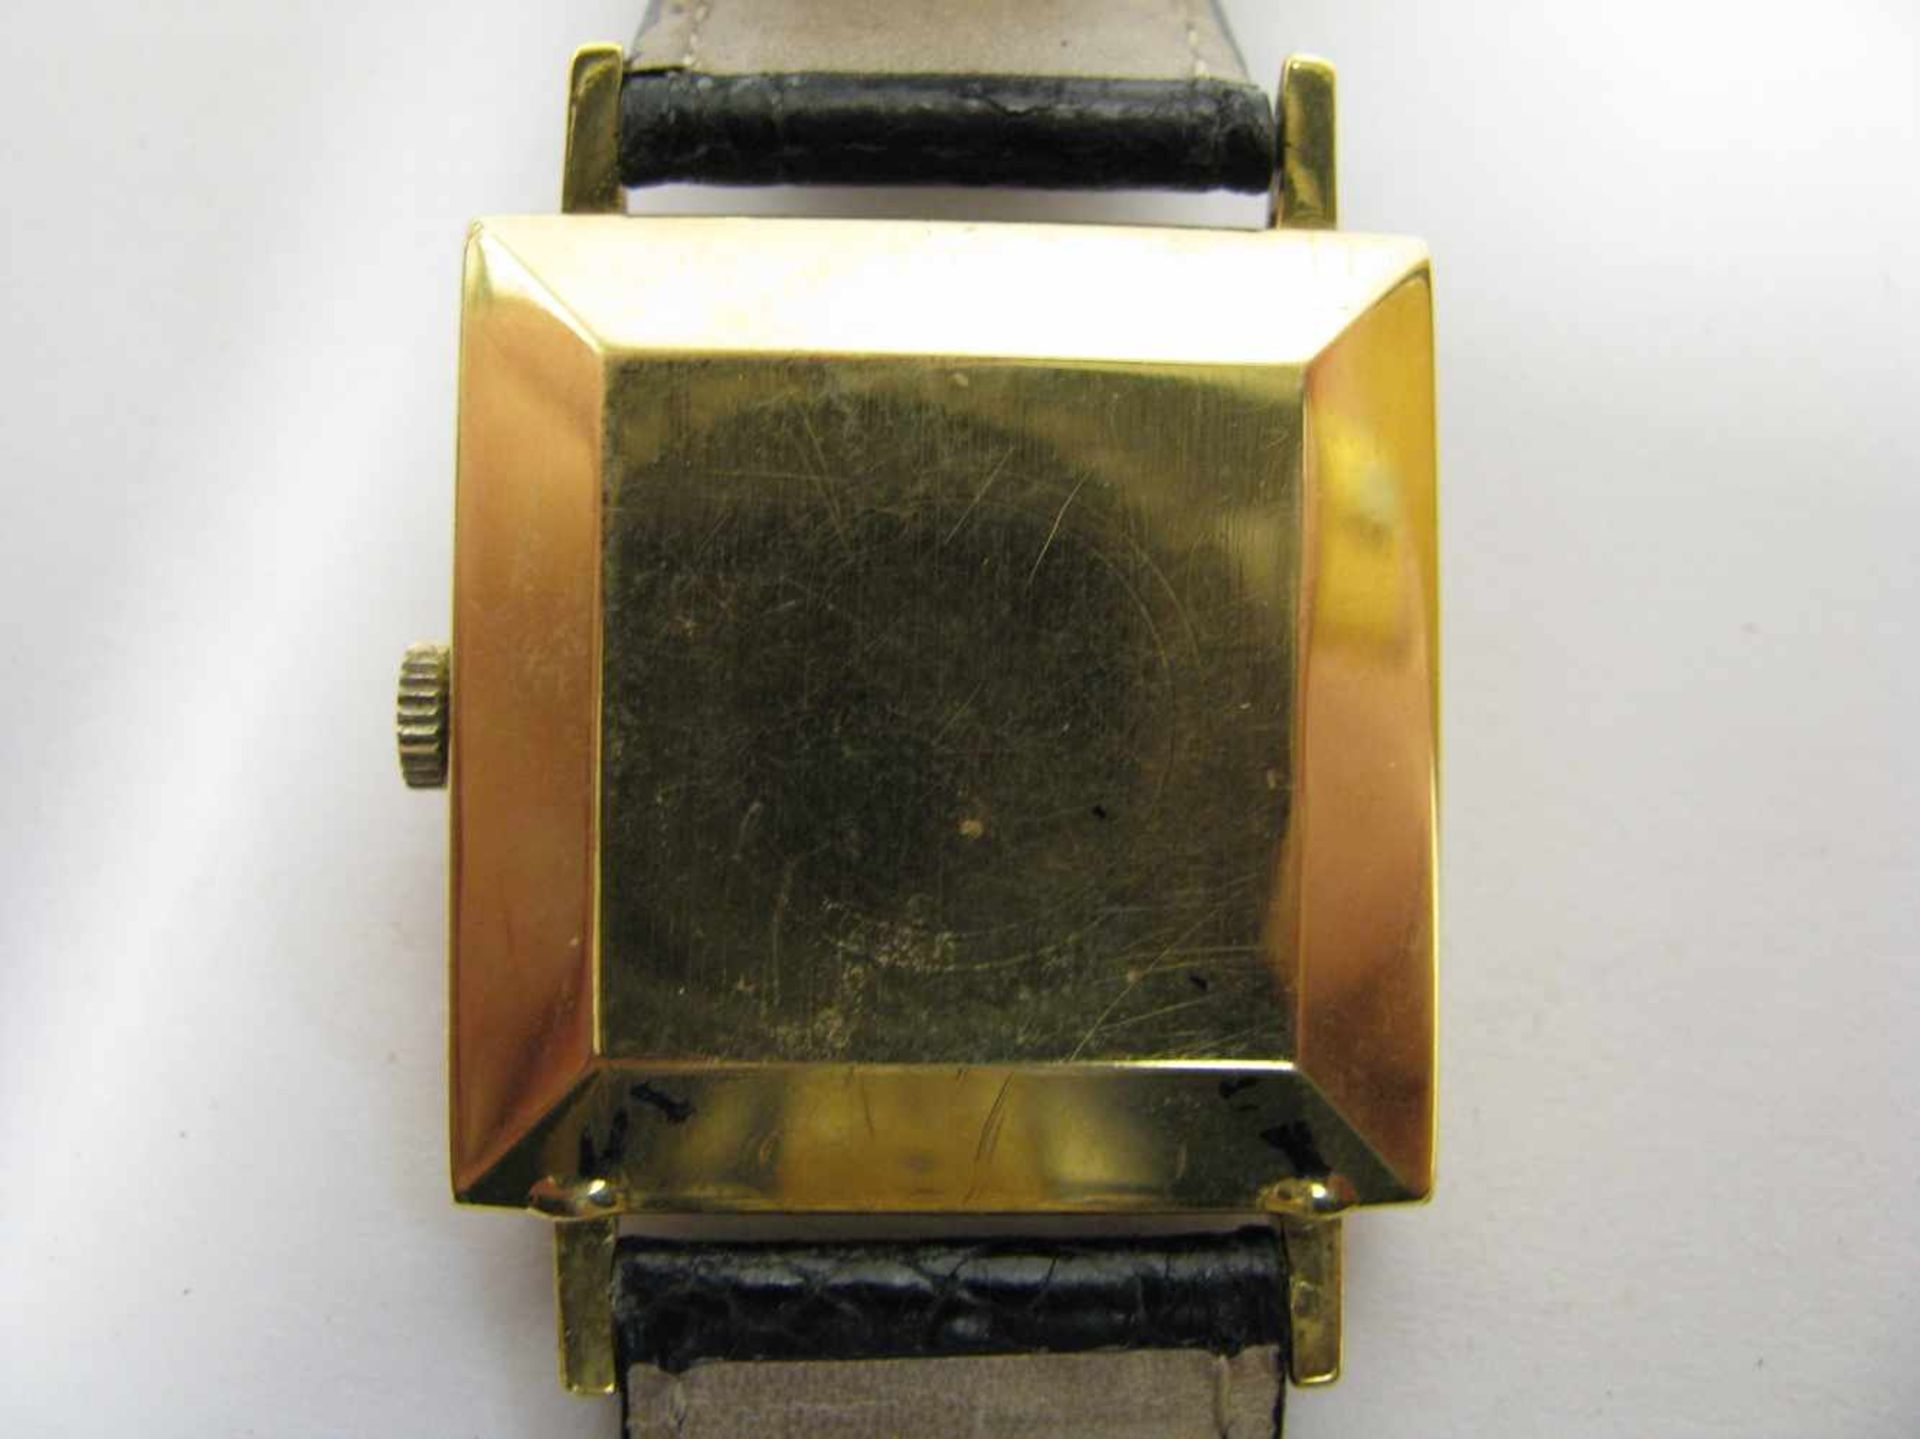 HAU, Eterna, Automatic, 4-eckiges Gehäuse 750er Gelbgold, gepunzt, Datumsanzeige, Lederband, intakt, - Image 2 of 2